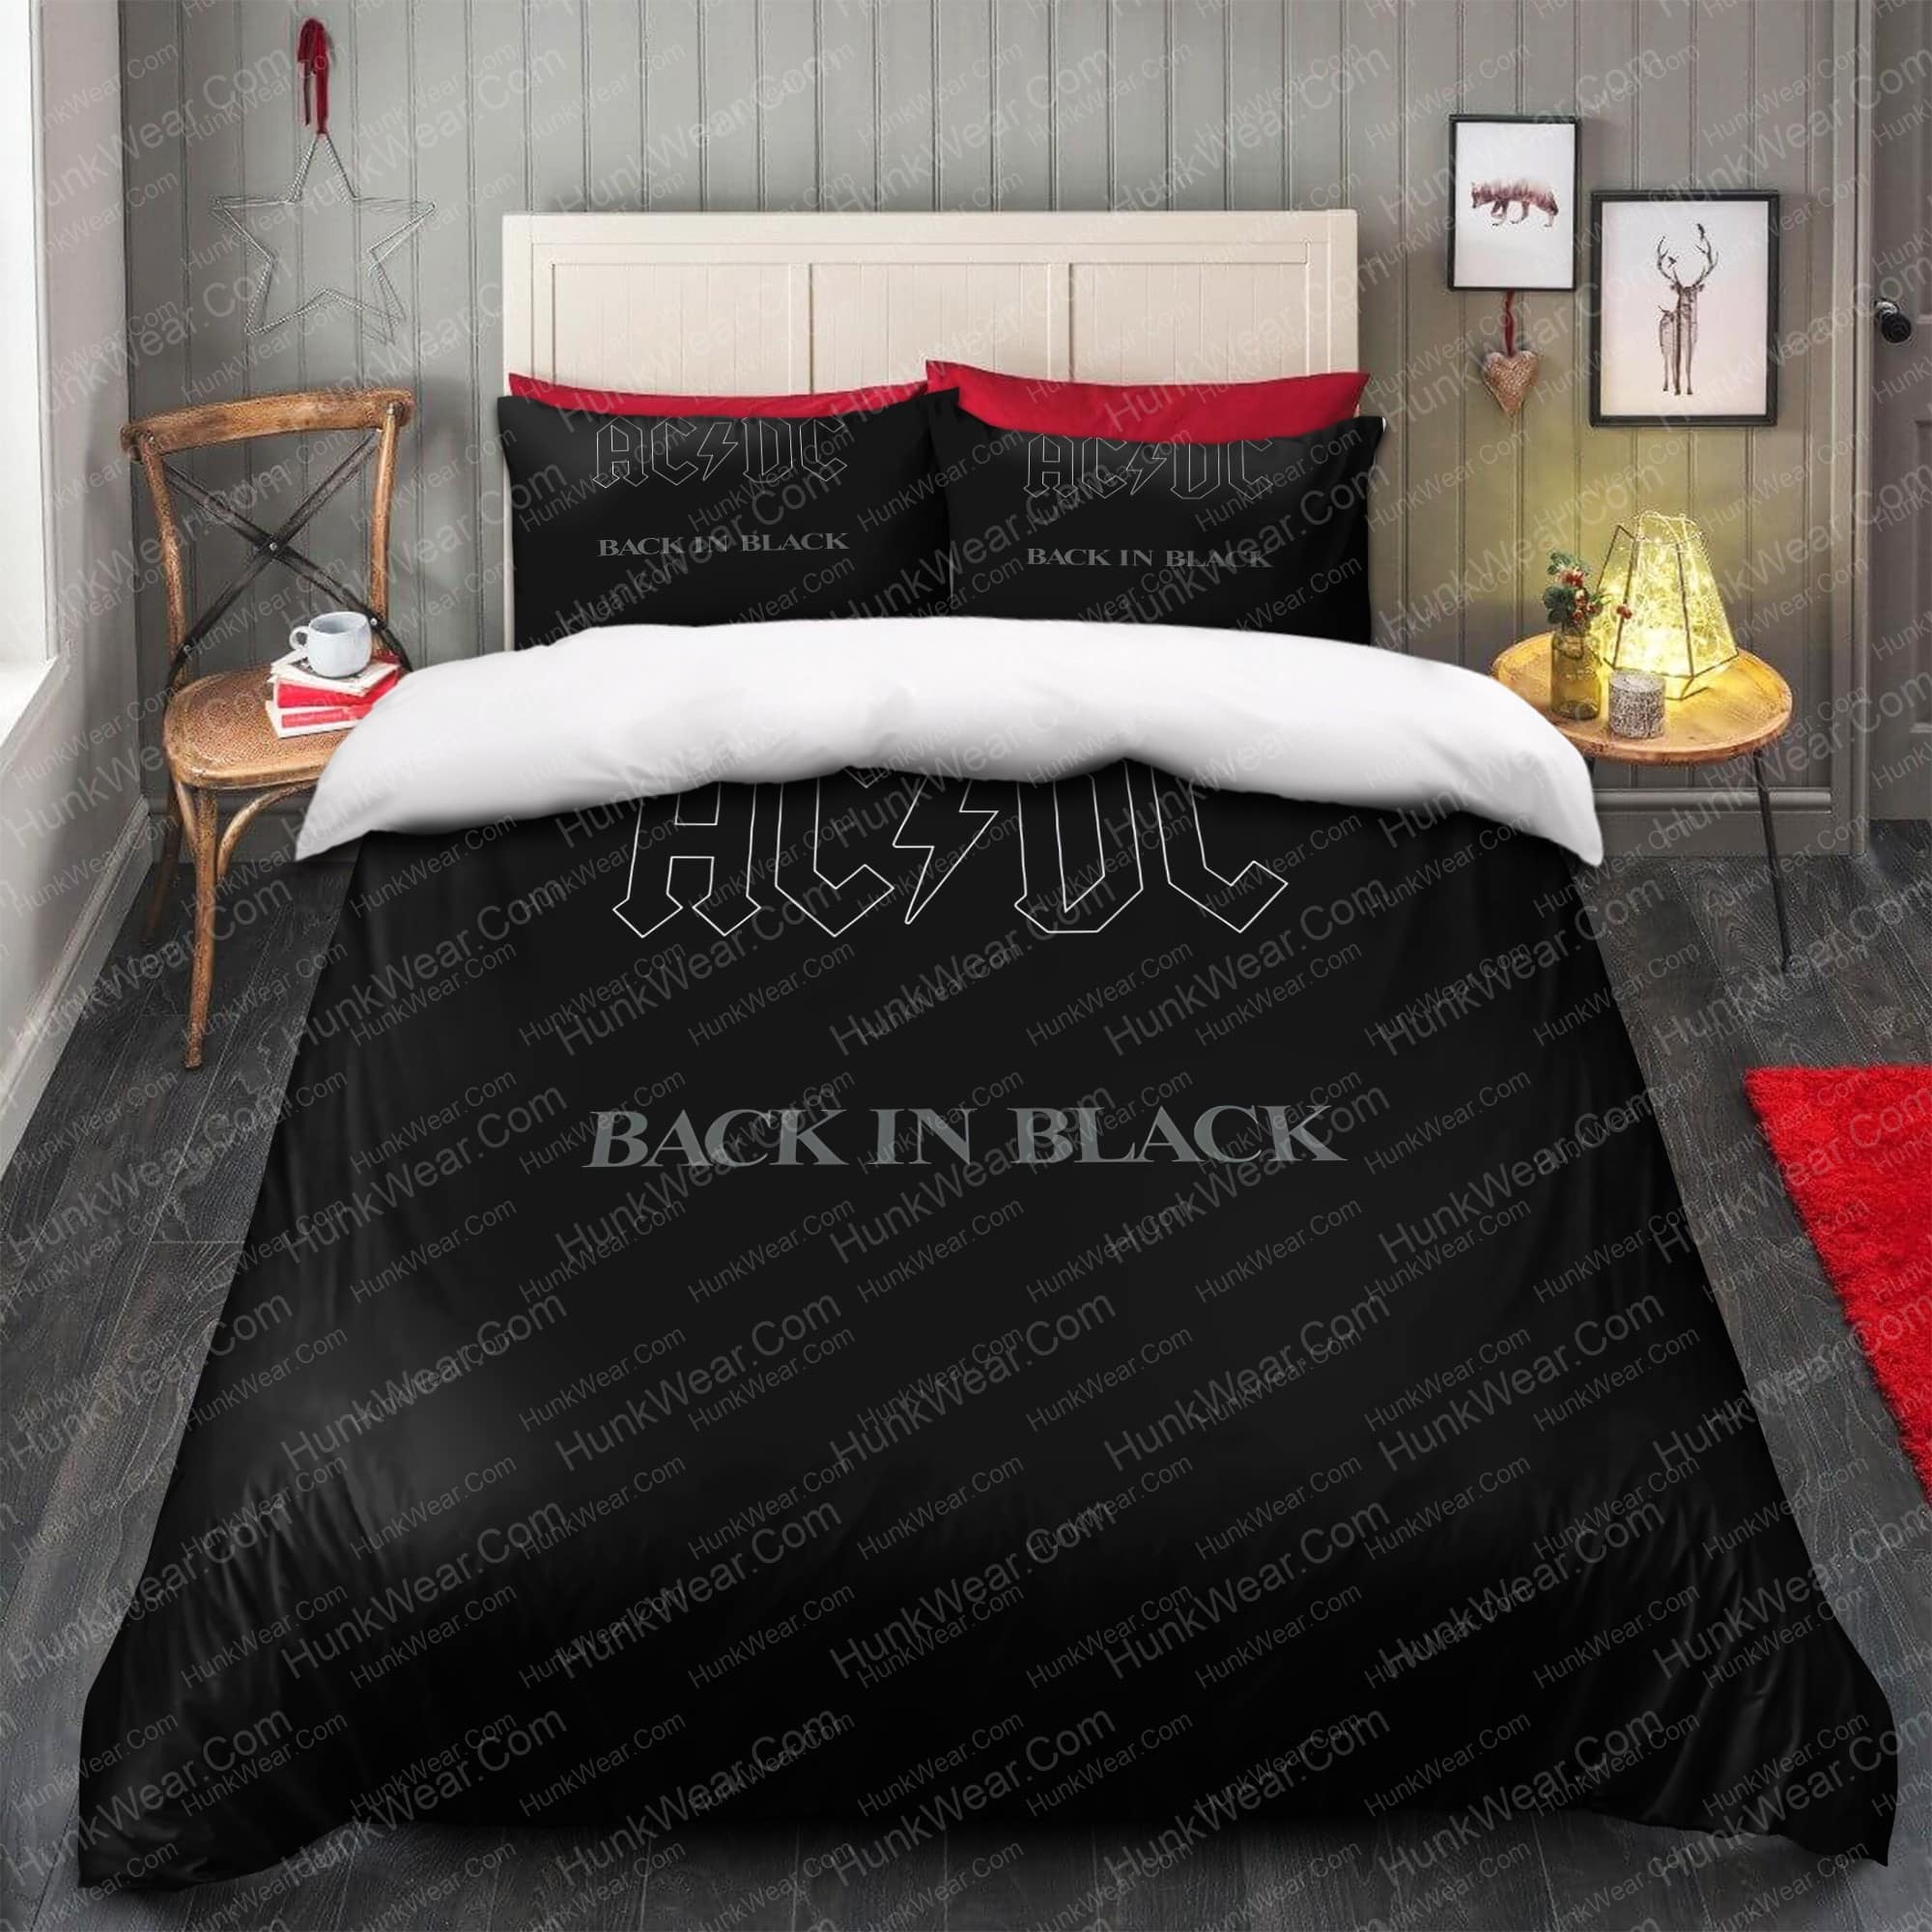 ac dc back in black 1980 album bedding sets 1